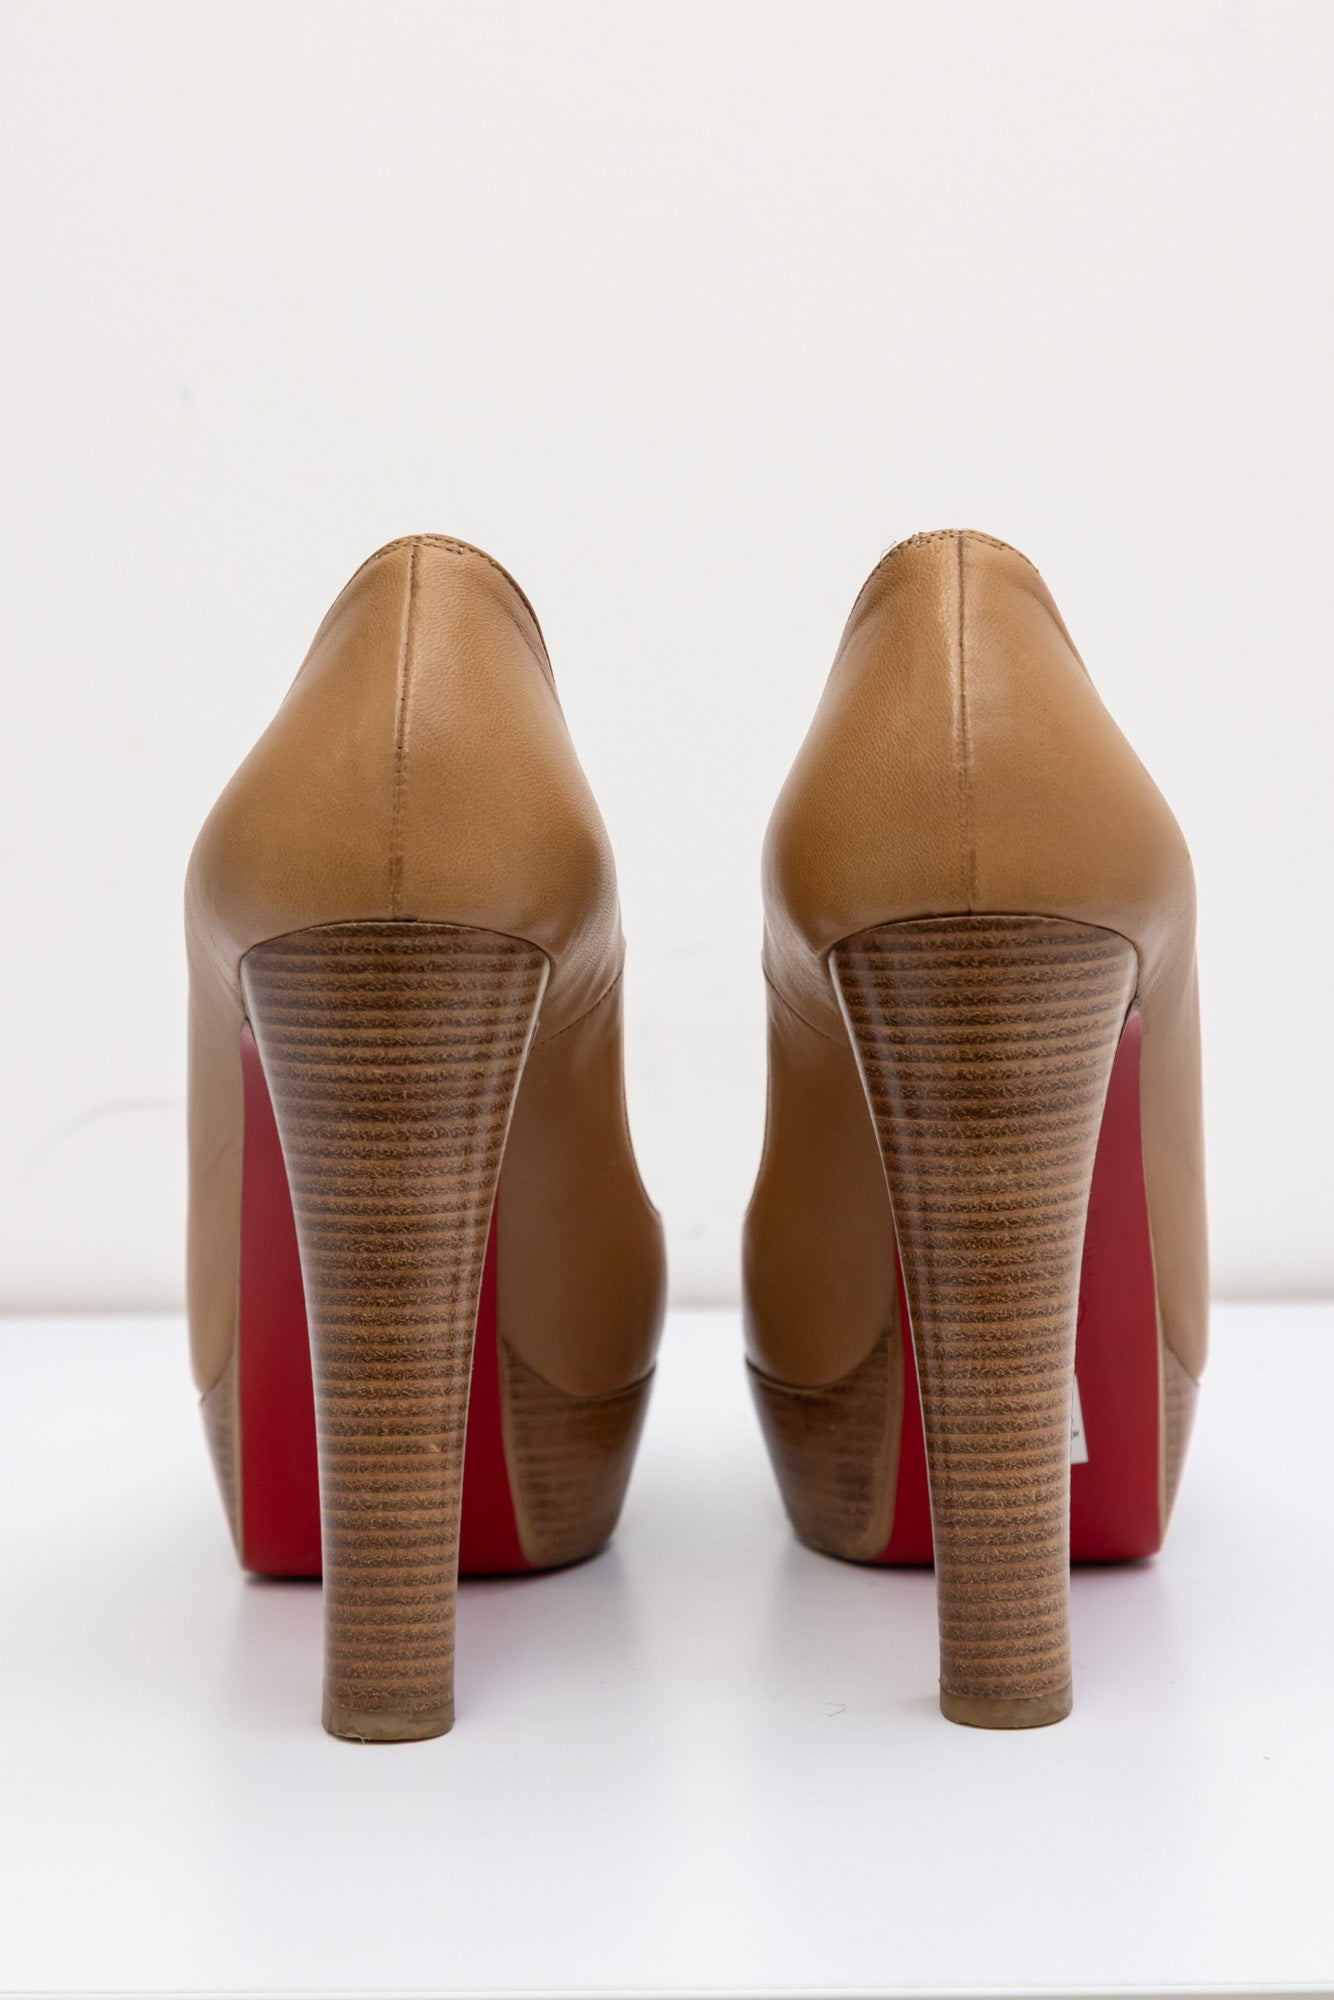 CHRISTIAN LOUBOUTIN Туфли-лодочки на платформе с красной подошвой и открытым носком на деревянном каблуке светло-коричневого цвета